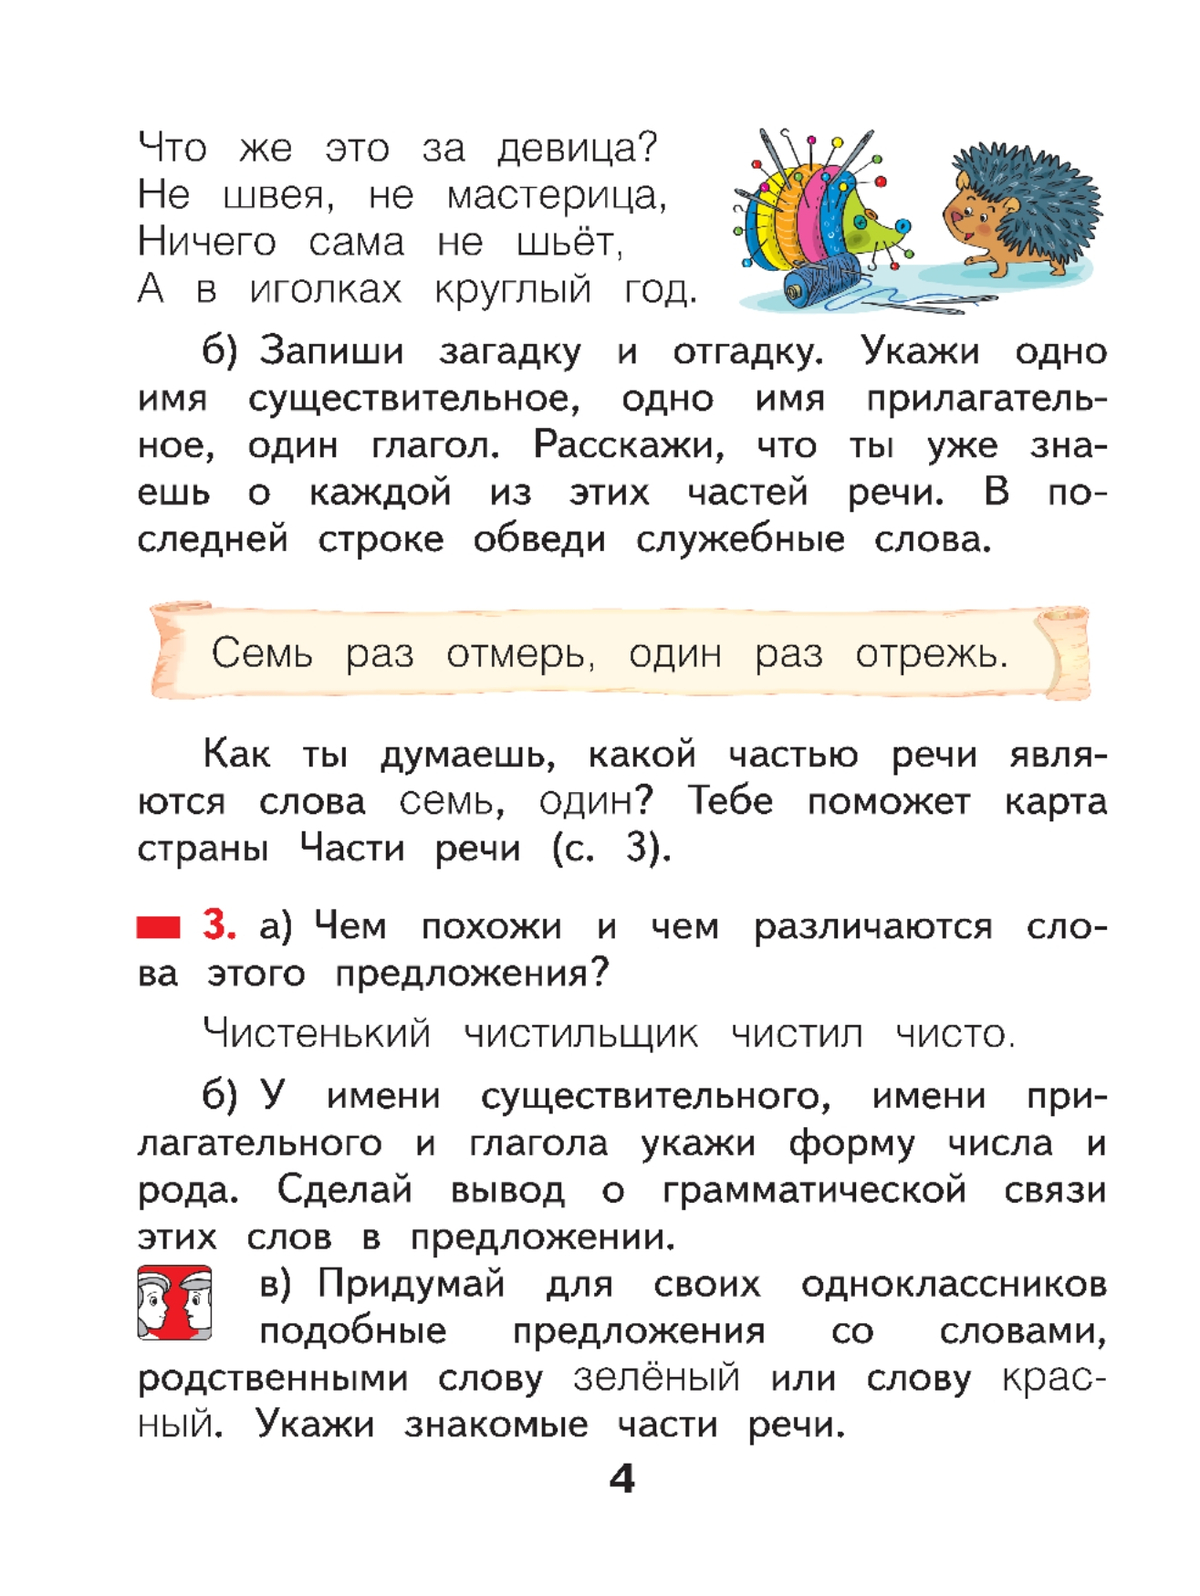 Русский язык. 2 класс. Учебное пособие В 2 ч. Часть 2 7